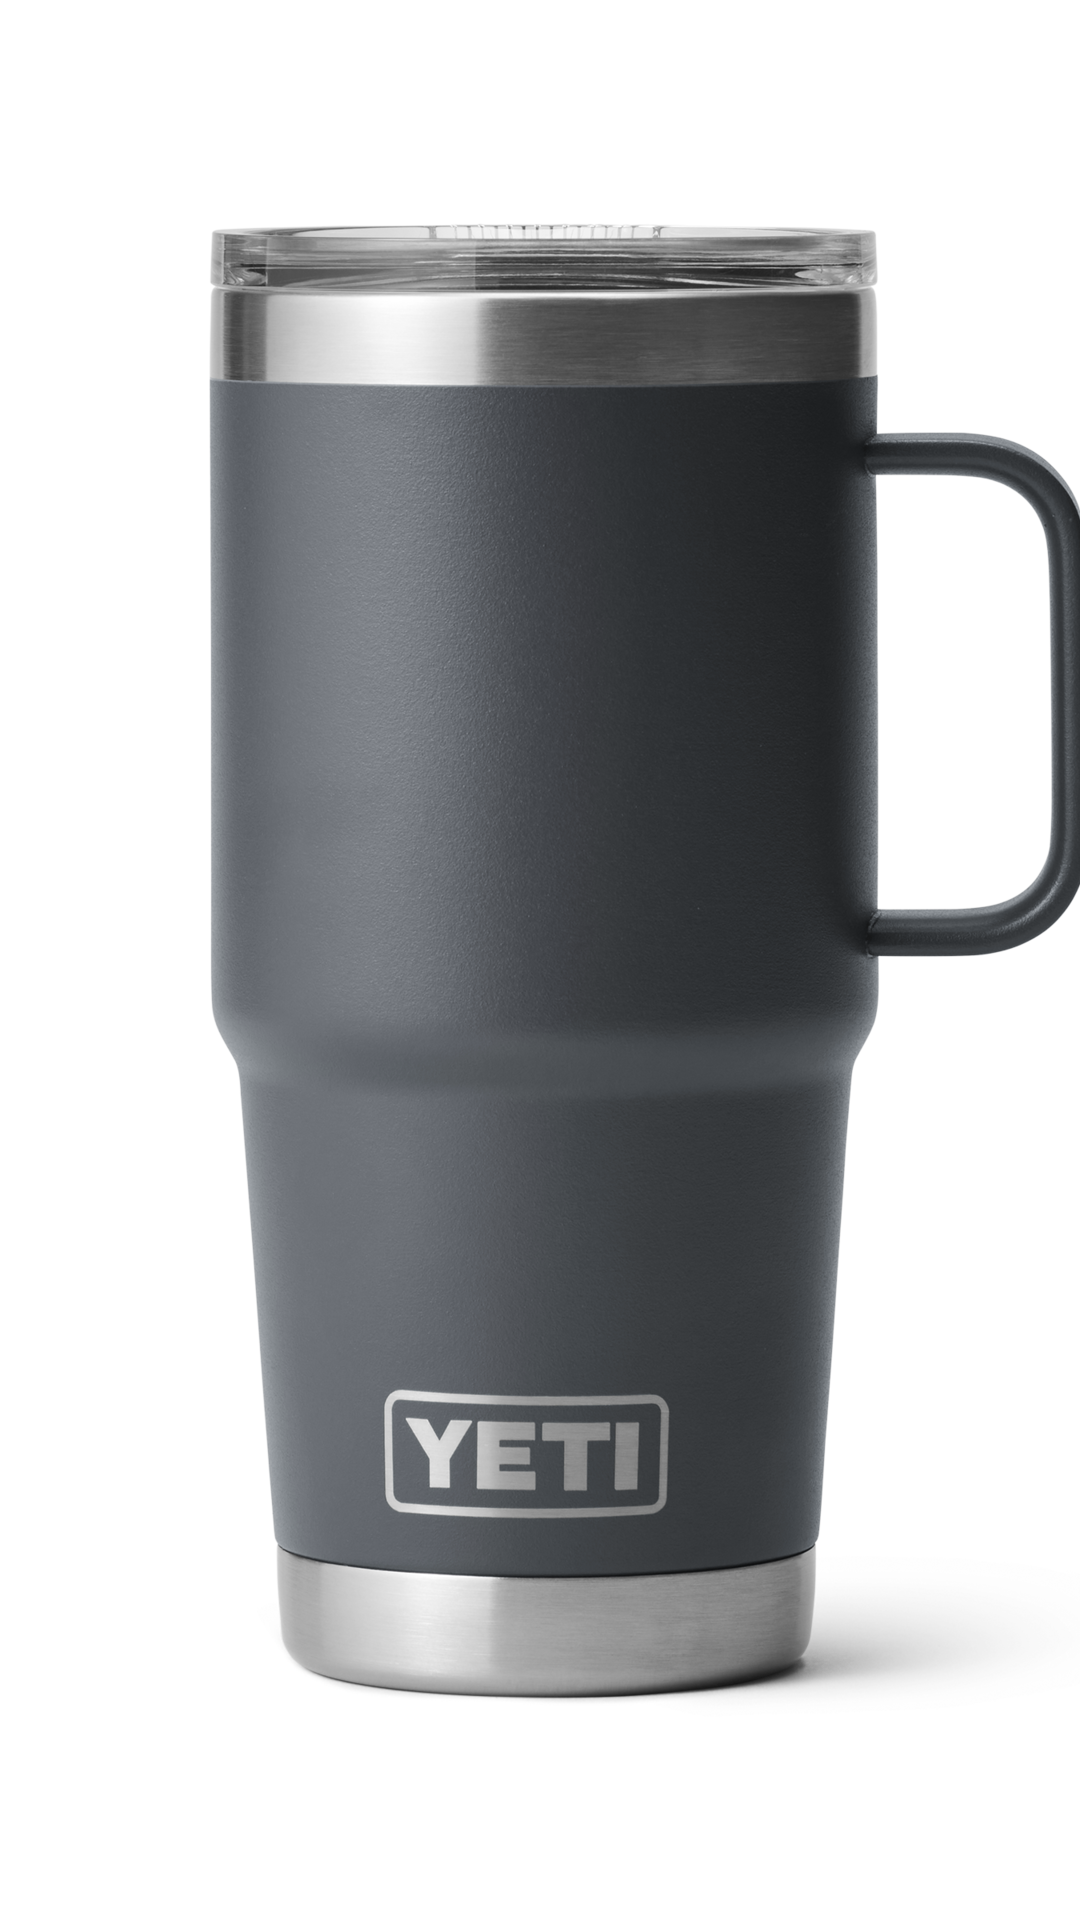 Yeti 20 oz Rambler Travel Mug with Stronghold Lid